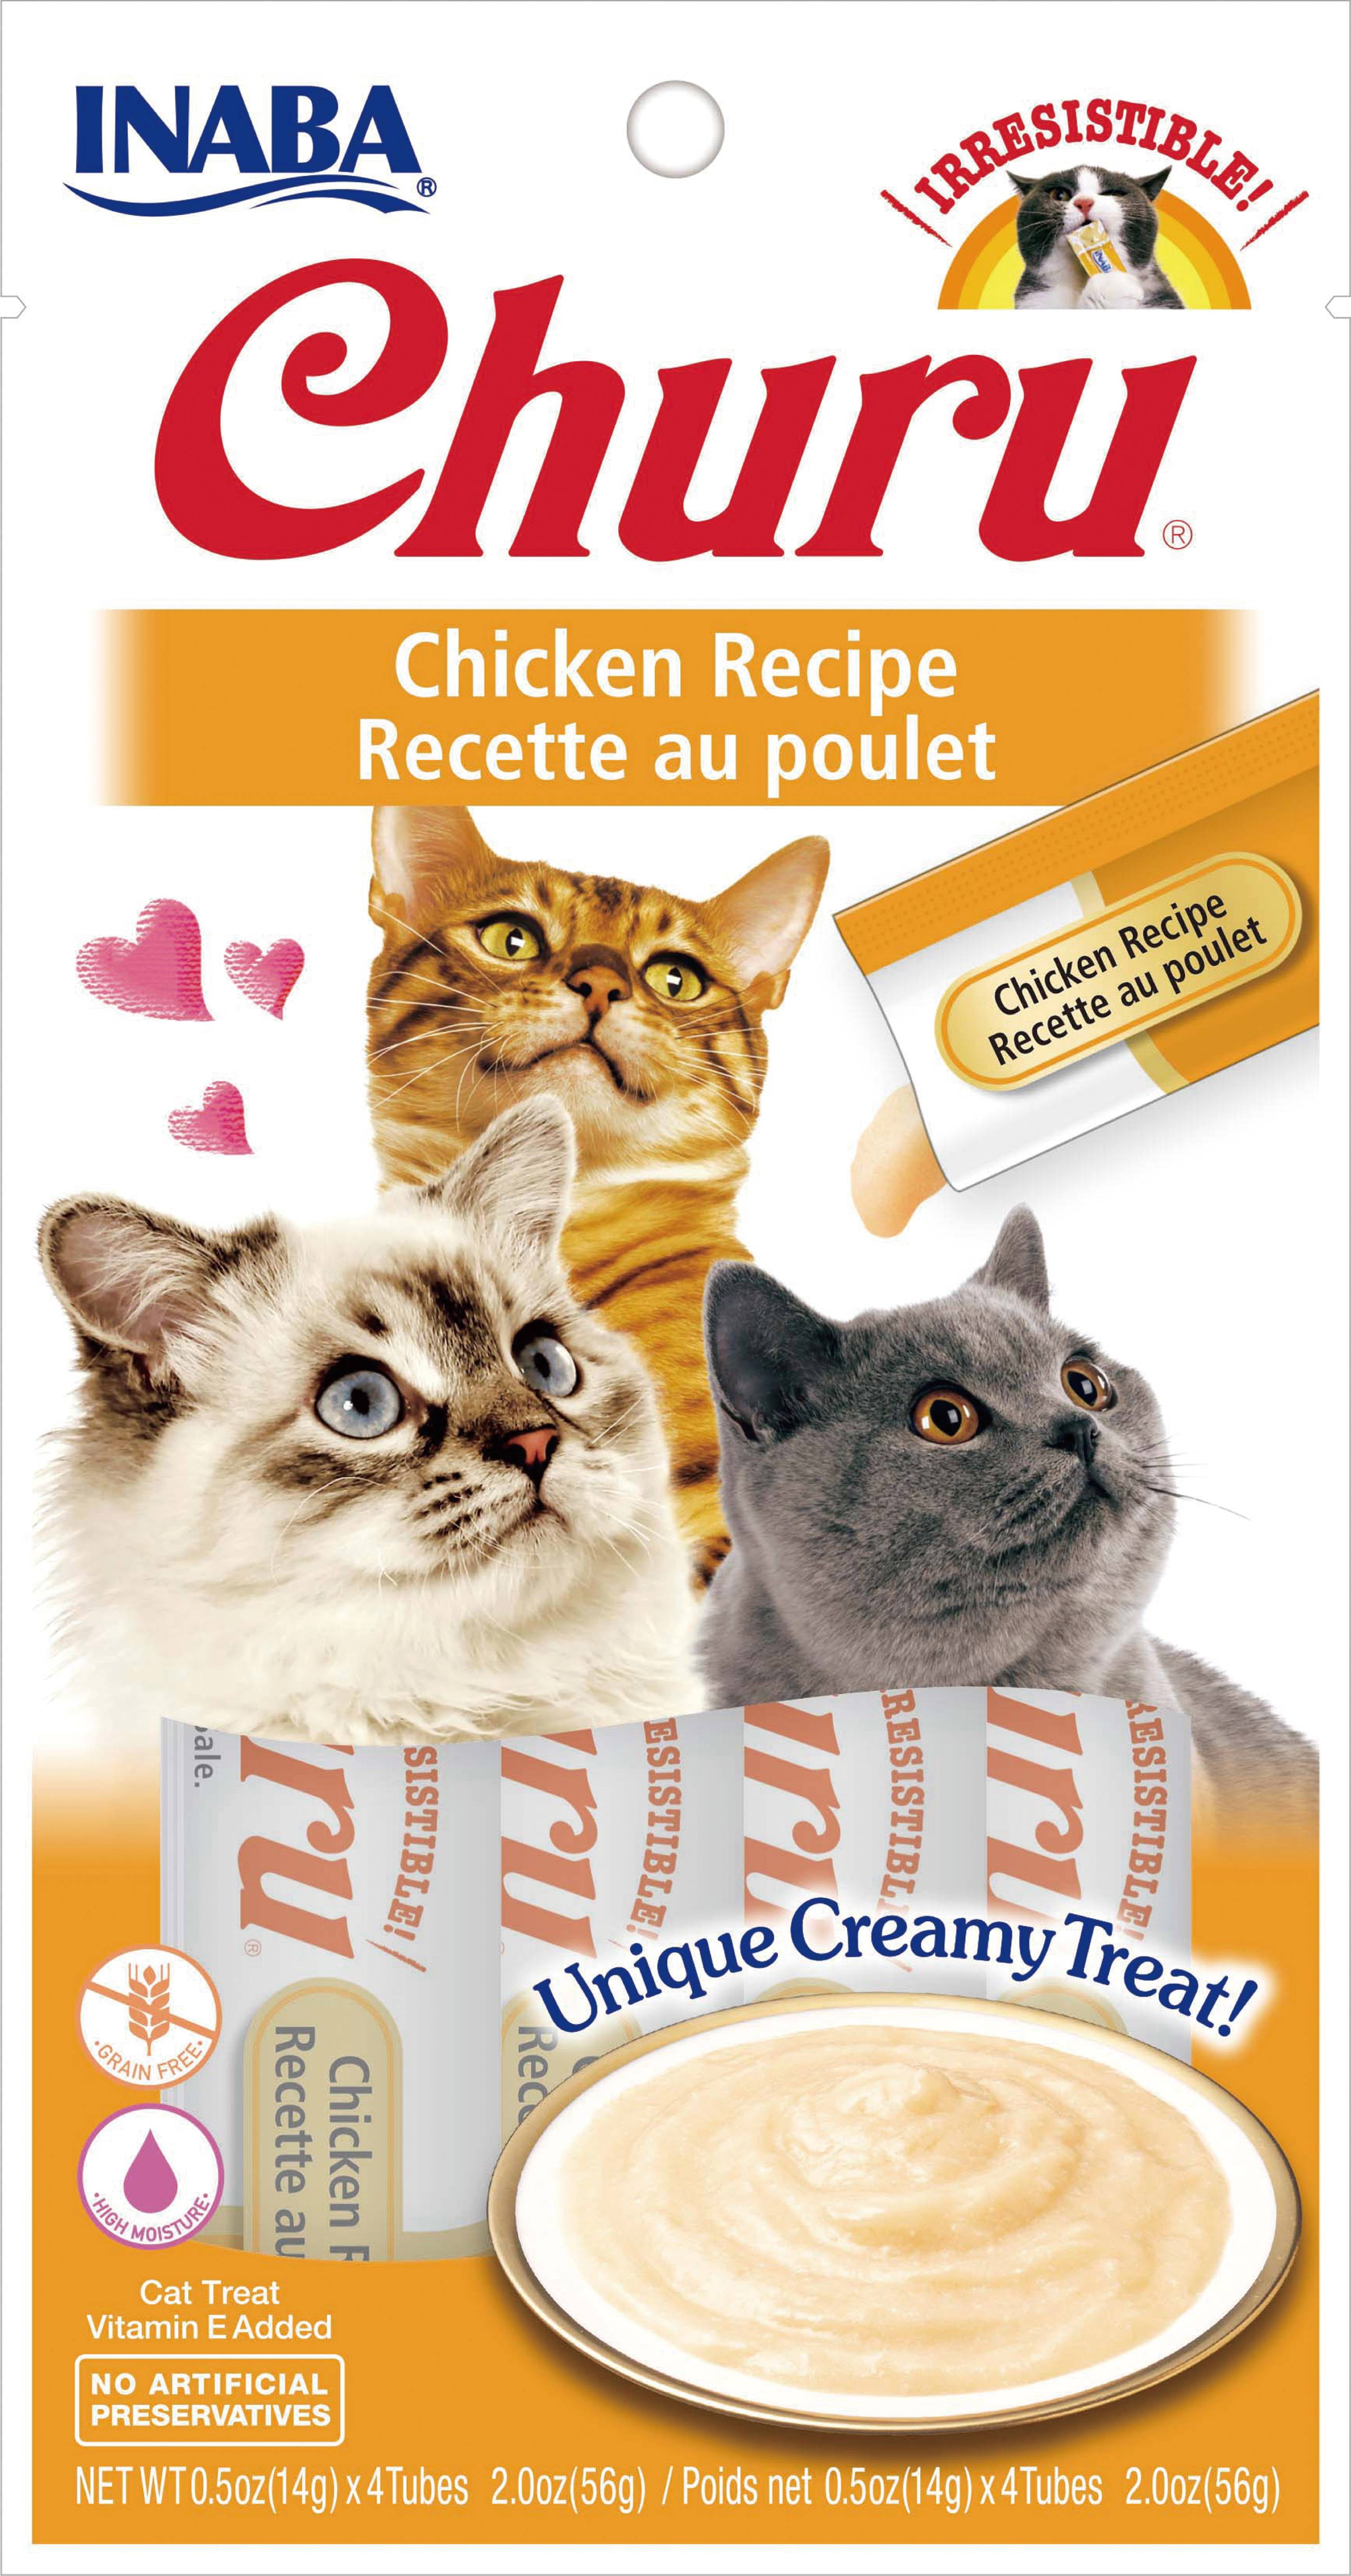 Inaba Churu Grain-Free Cat Treat, Chicken Puree, 24 Tubes ...